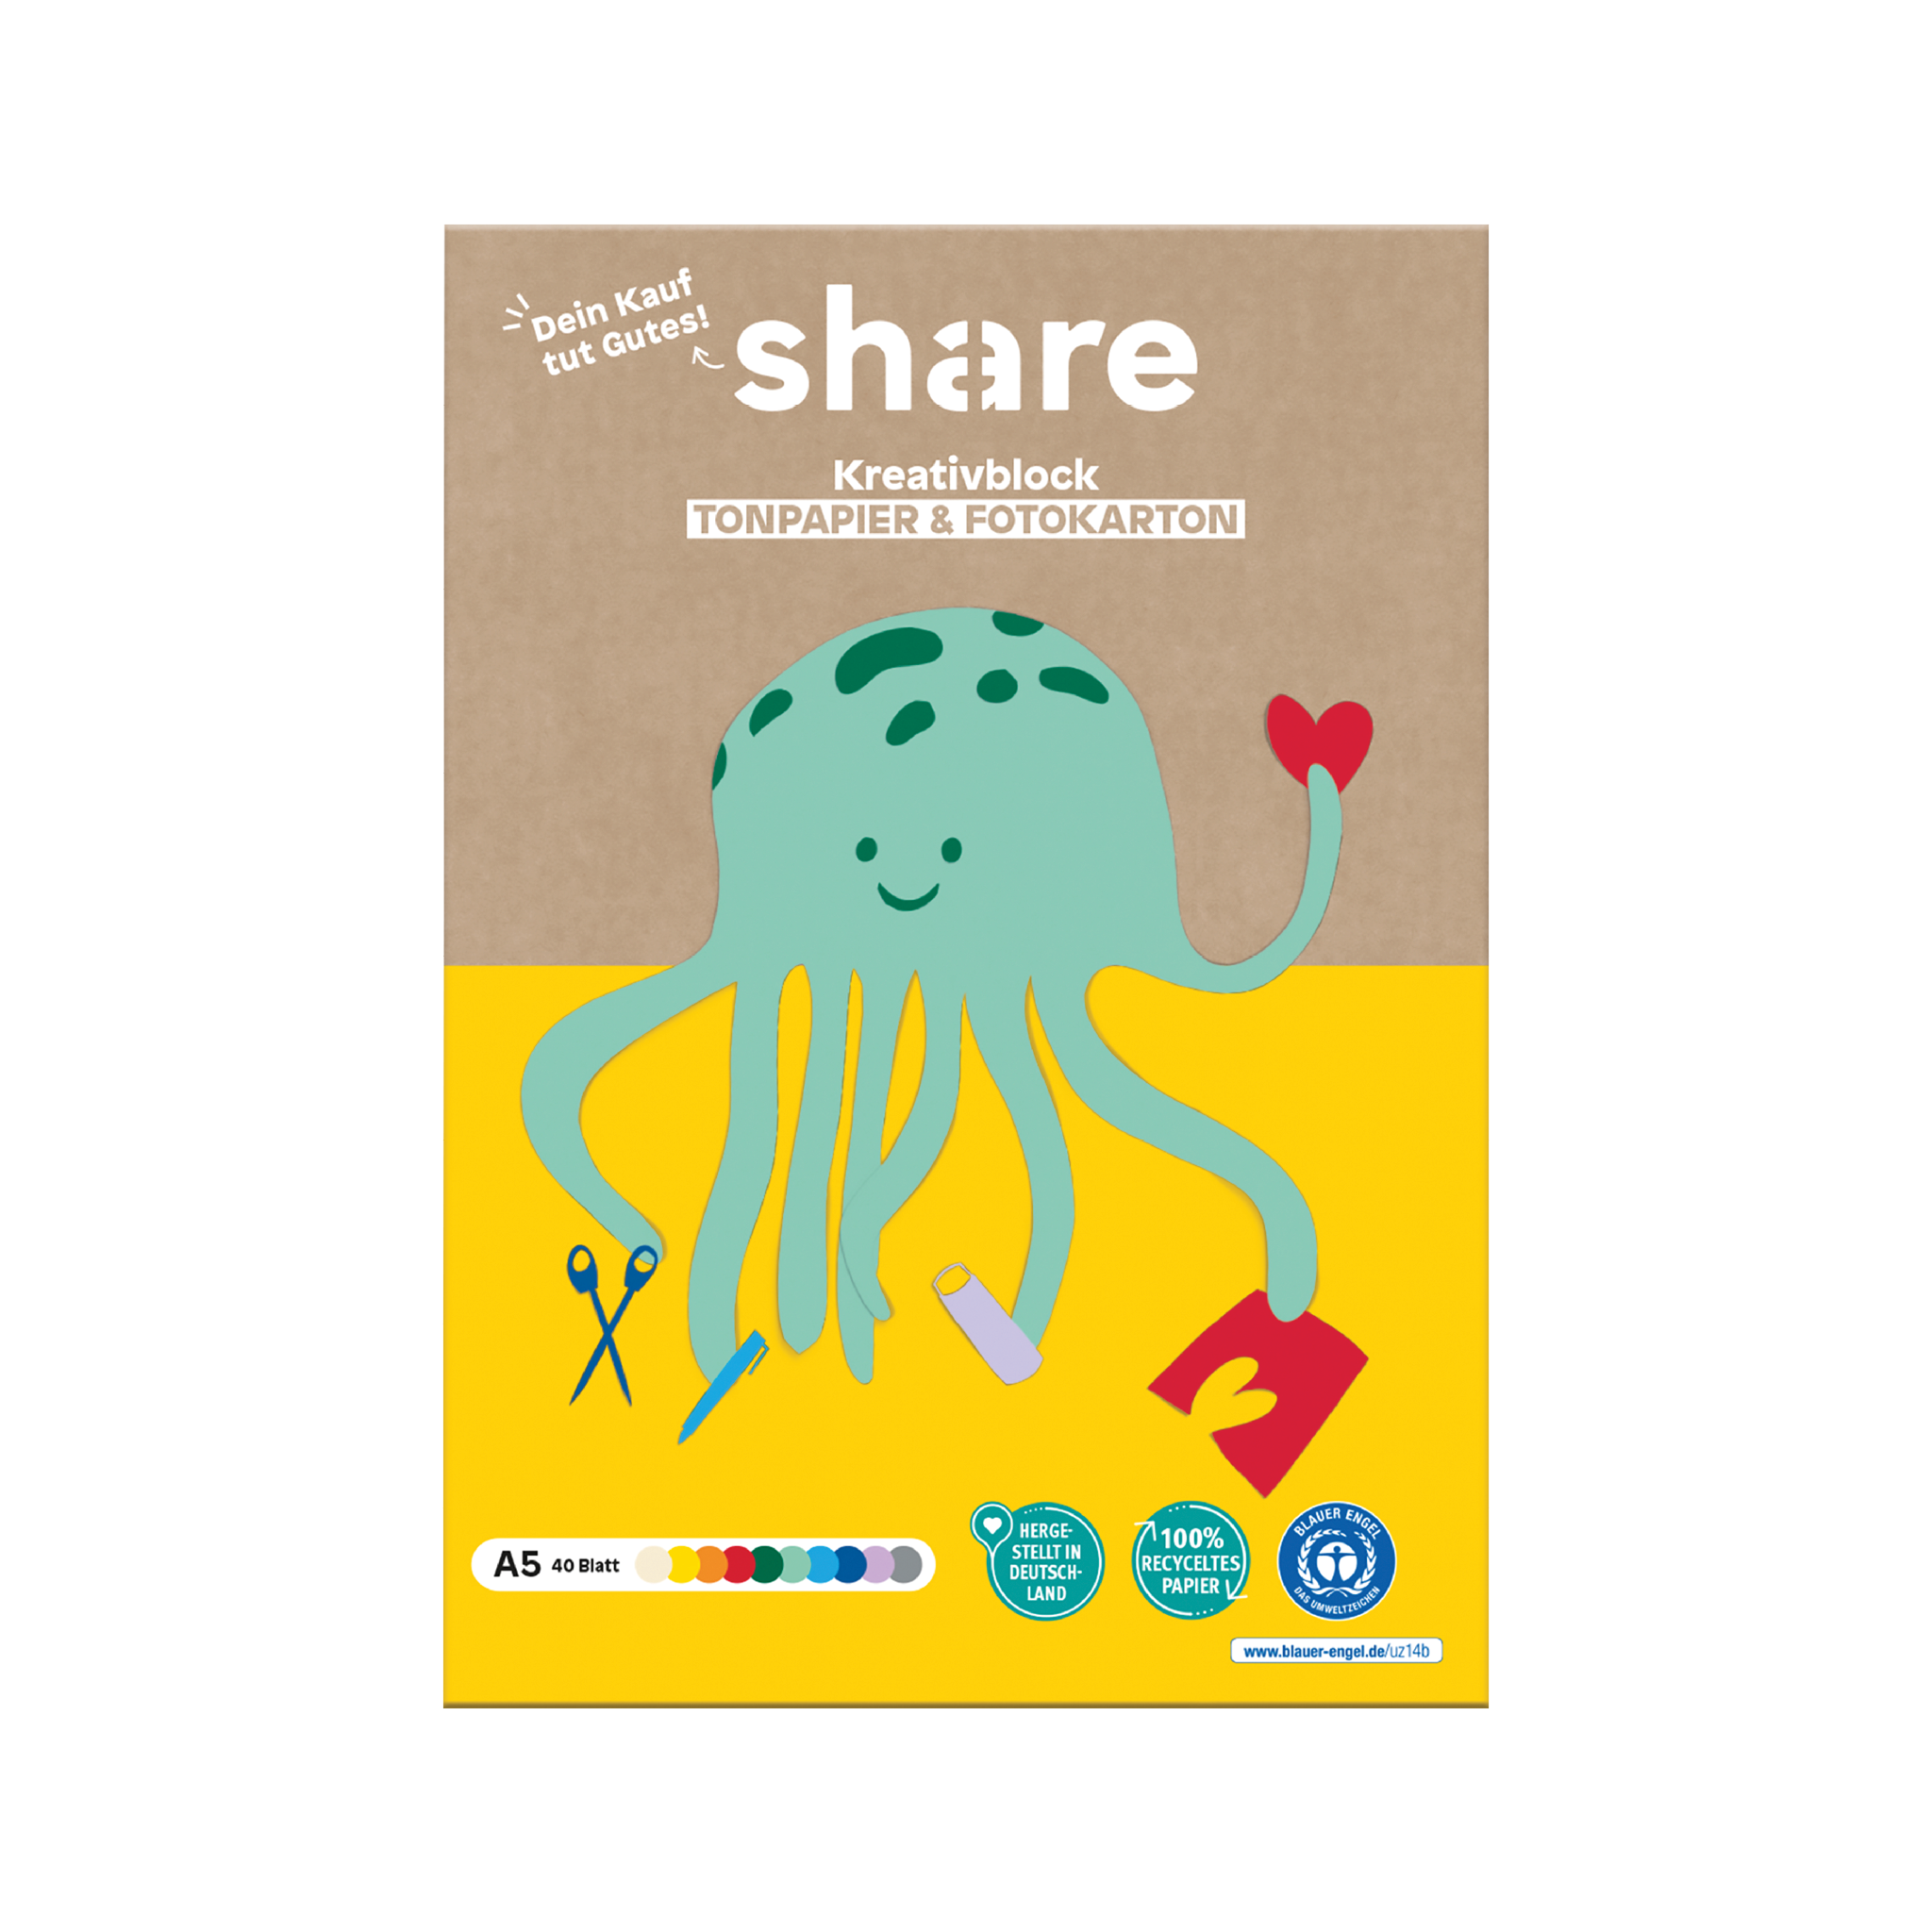 Eine Illustration eines fröhlichen grünen Oktopus, der künstlerisches Schaffen betreibt, abgebildet auf dem Cover des Share Kreativ-Bastelblocks mehrfarbig A5, der Zeichenpapier und Fotokarten enthält. Das Aktienprodukt.